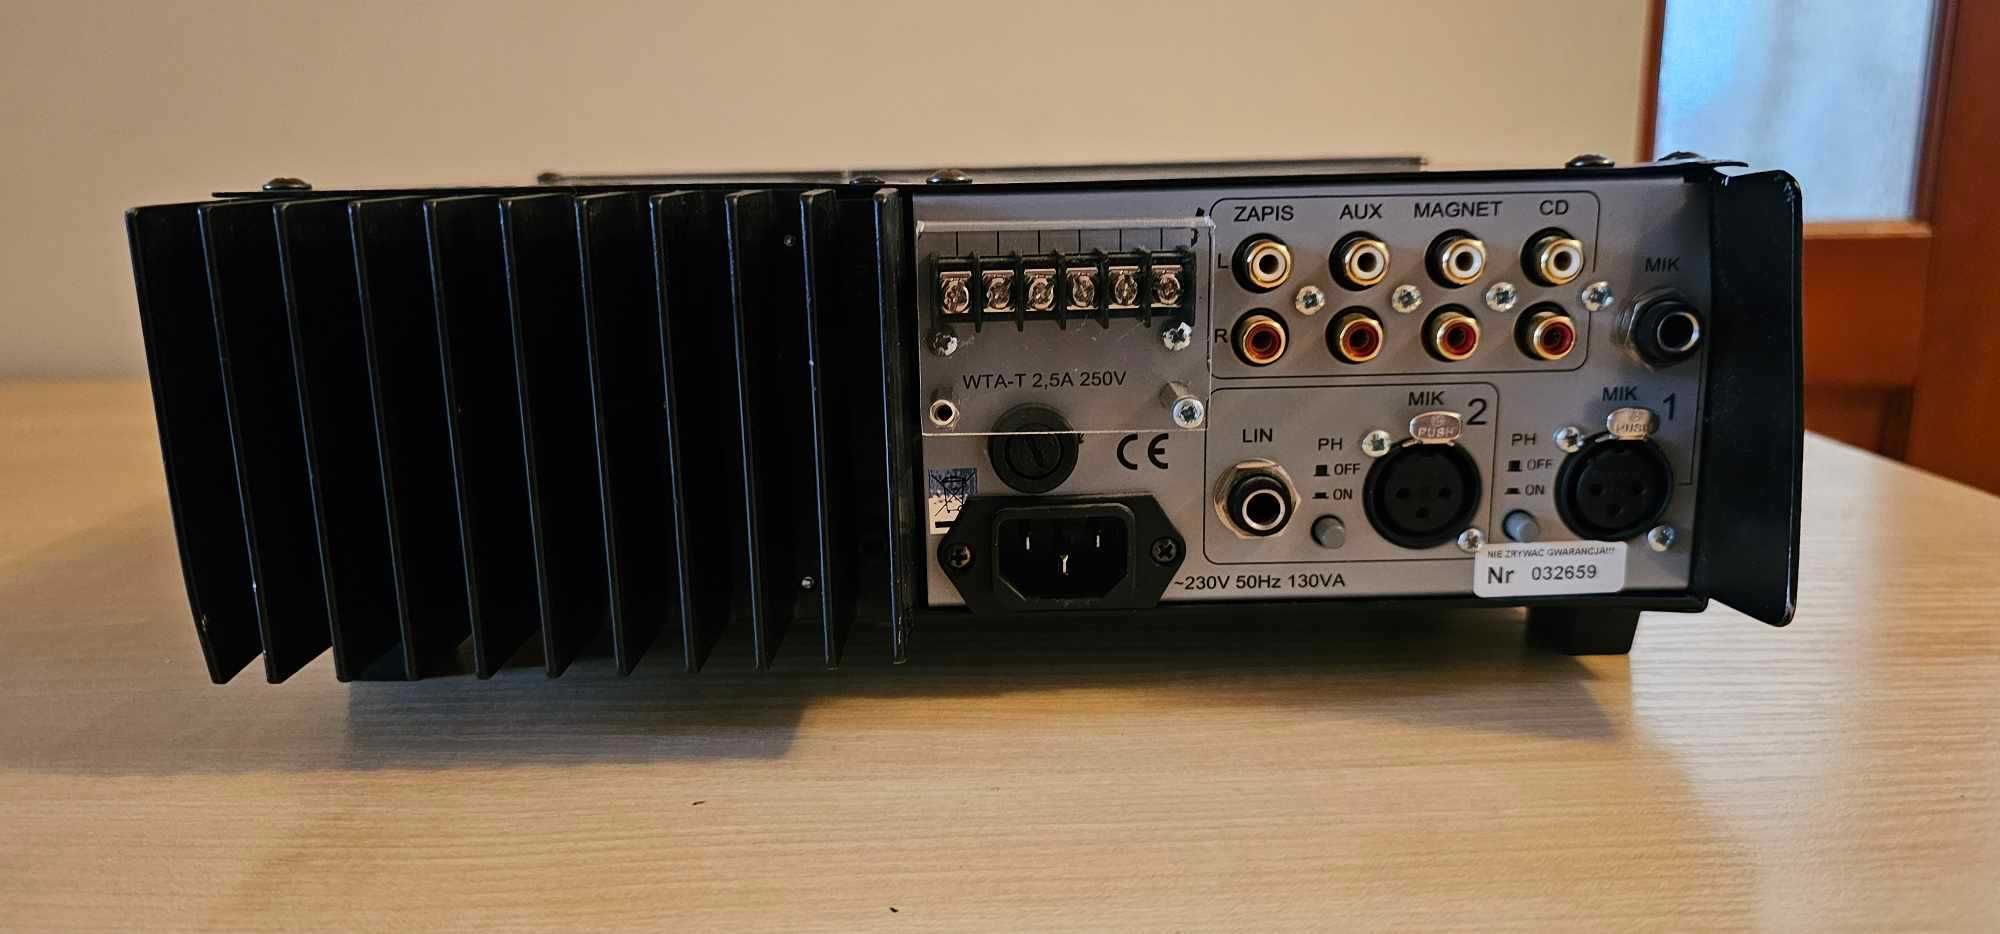 Wzmacniacz radiowęzłowy ELEKTRONIKA model WM-375